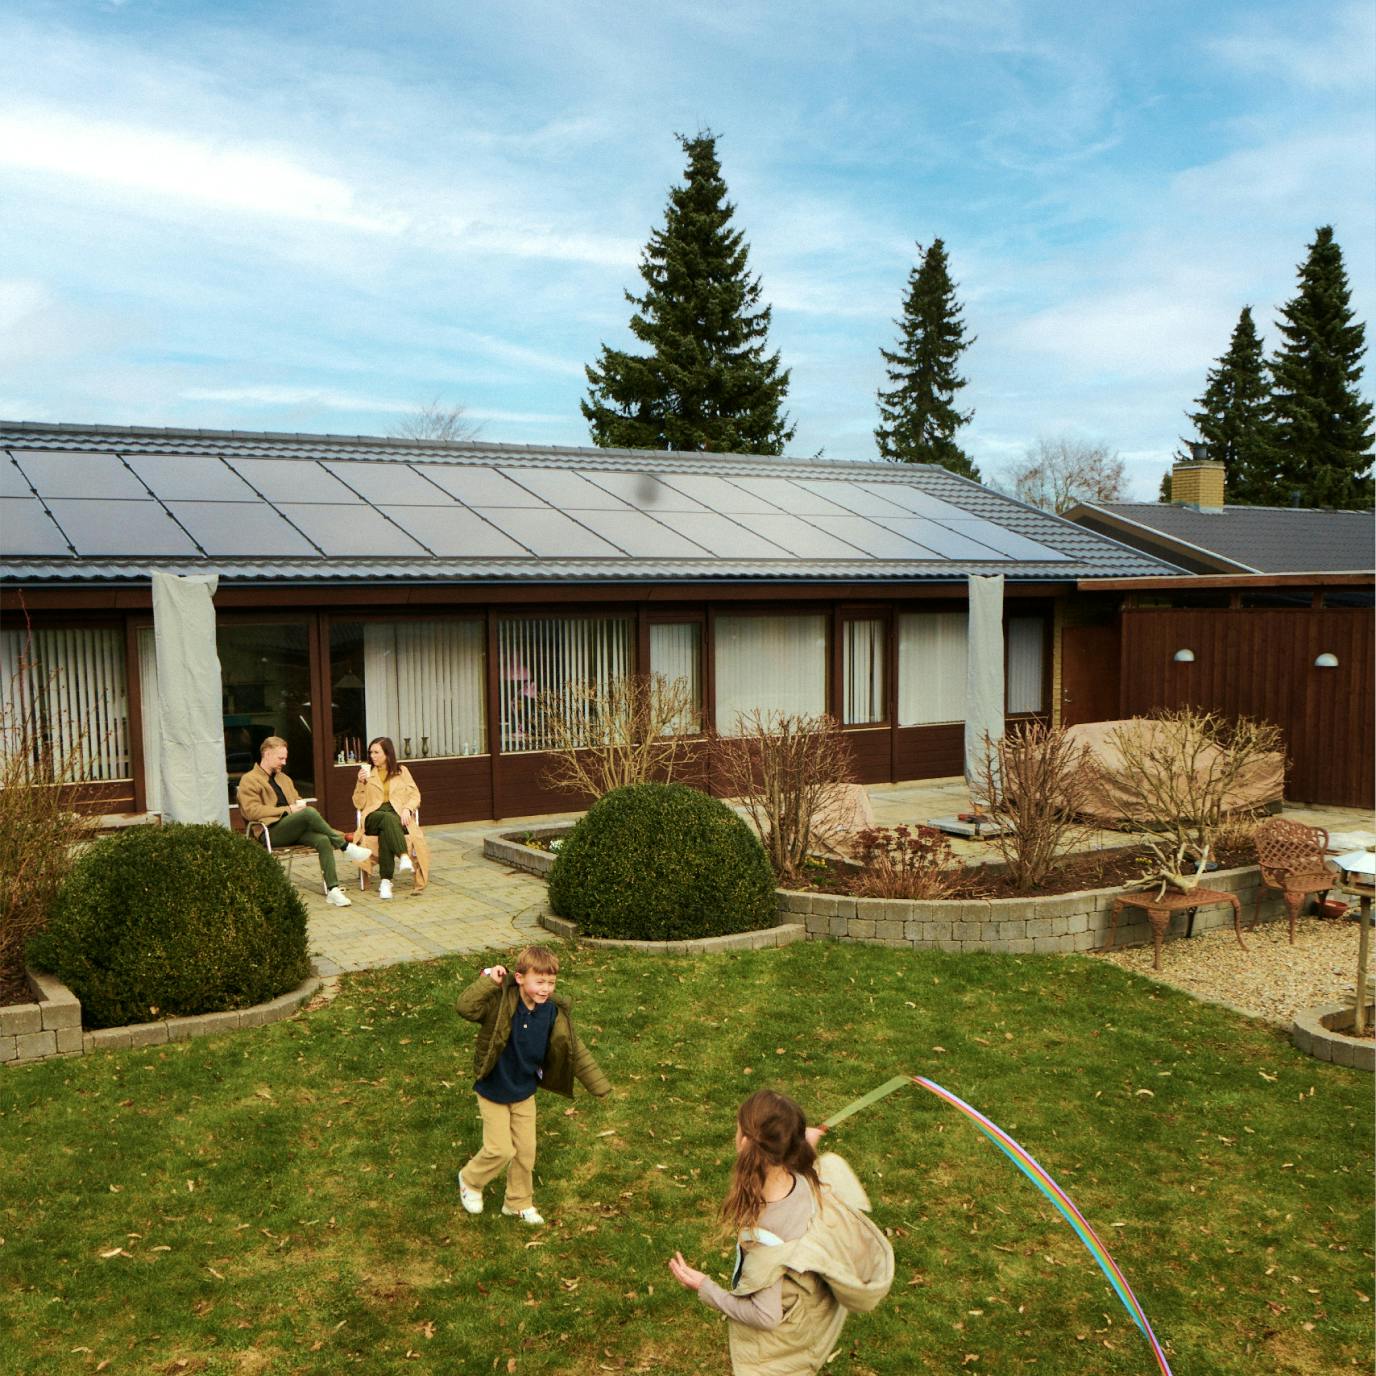 Familie i haven med solceller på taget i baggrunden